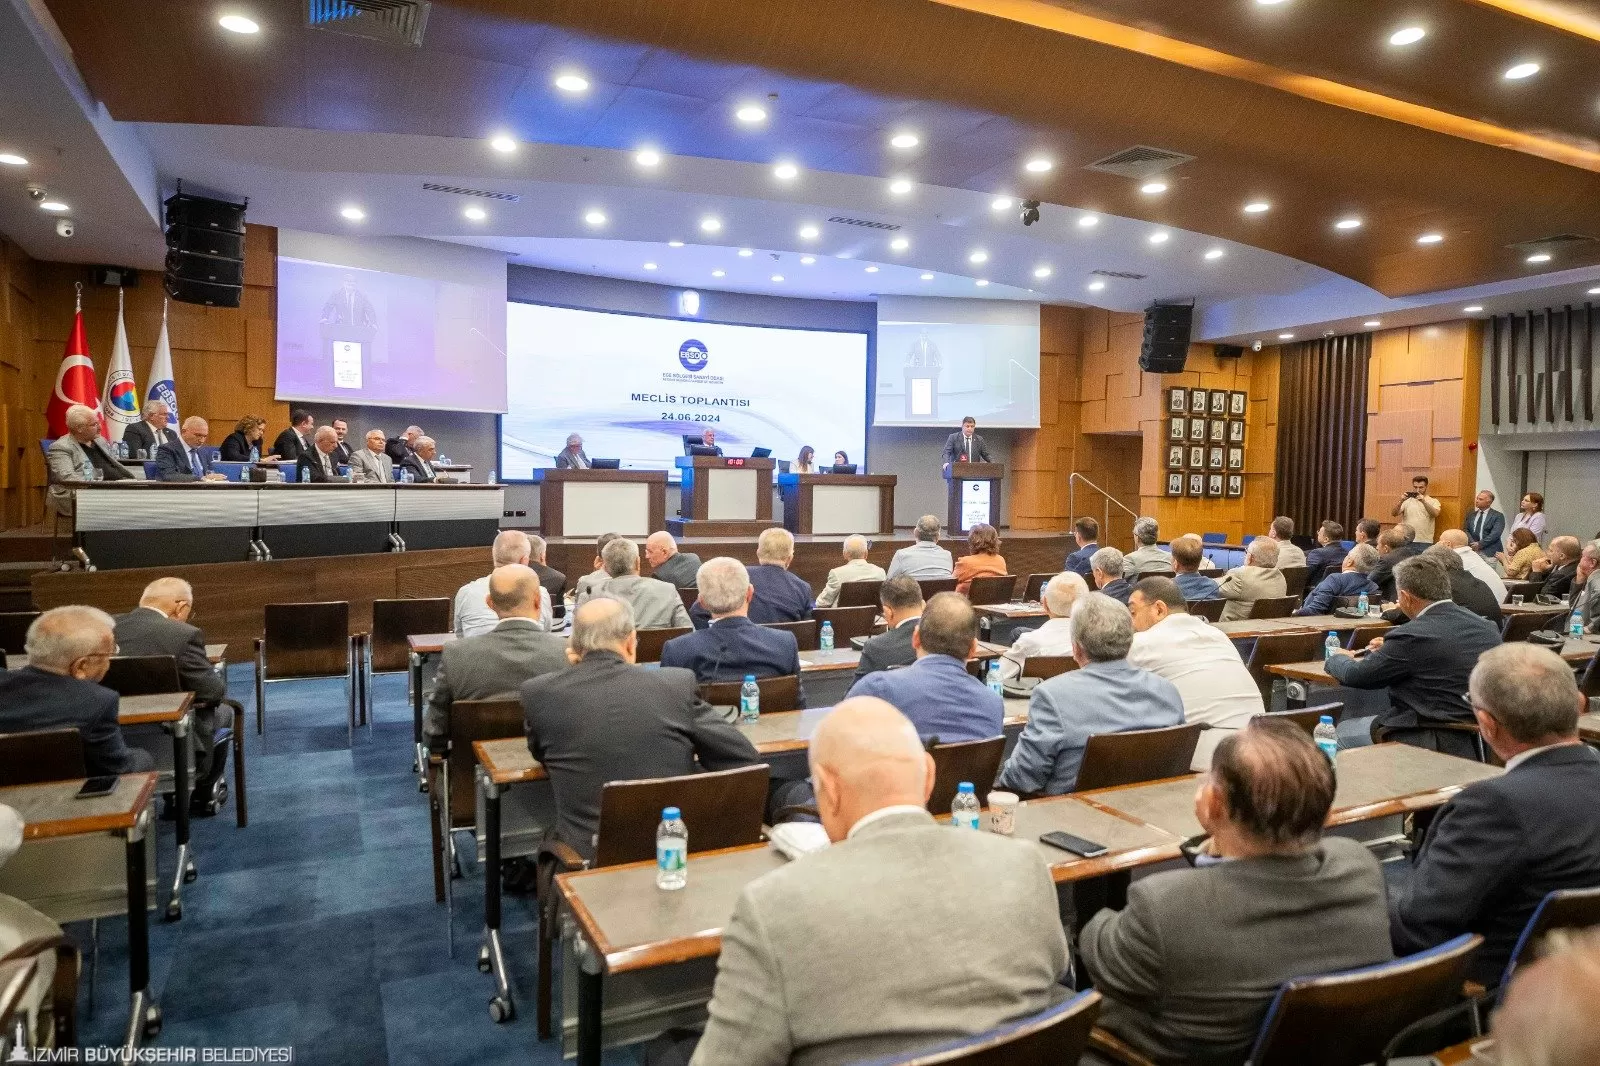 İzmir Büyükşehir Belediye Başkanı Dr. Cemil Tugay, Ege Bölgesi Sanayi Odası'nın (EBSO) Haziran ayı olağan meclis toplantısında önemli açıklamalarda bulundu.